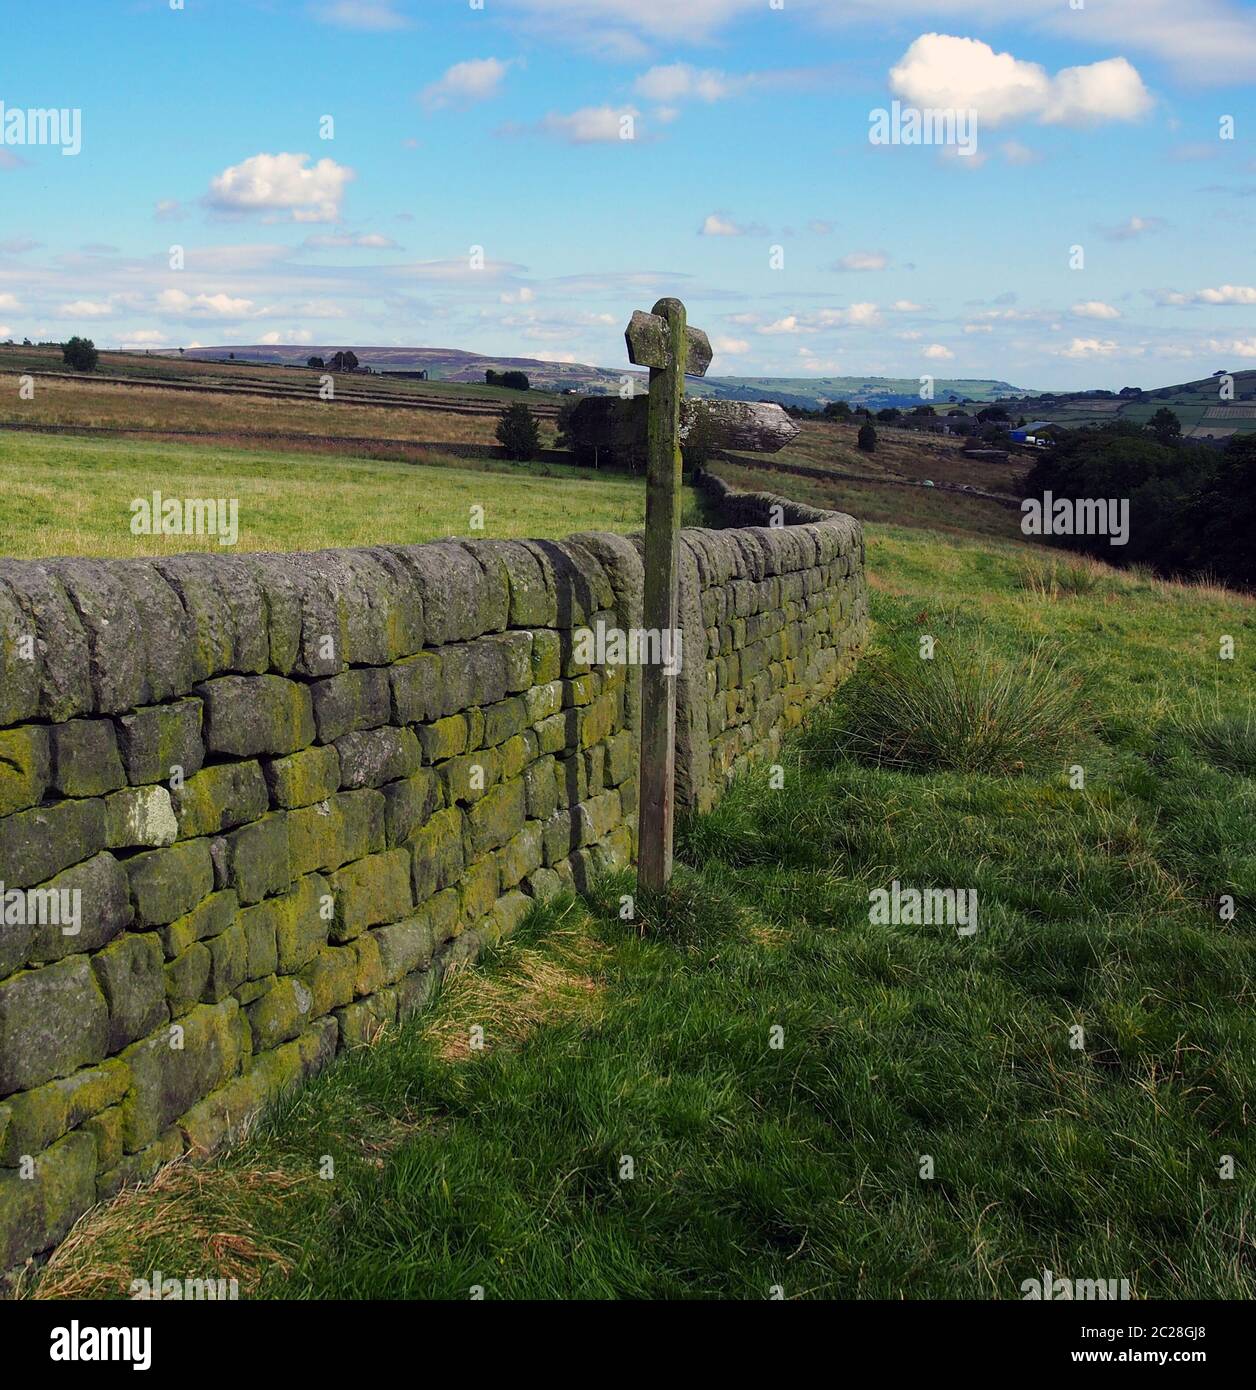 La campagne ouverte avec direction à côté d'un mur en pierre sèche avec des champs verts et mooland dans la distance, dans le Yorkshire, Angleterre Banque D'Images